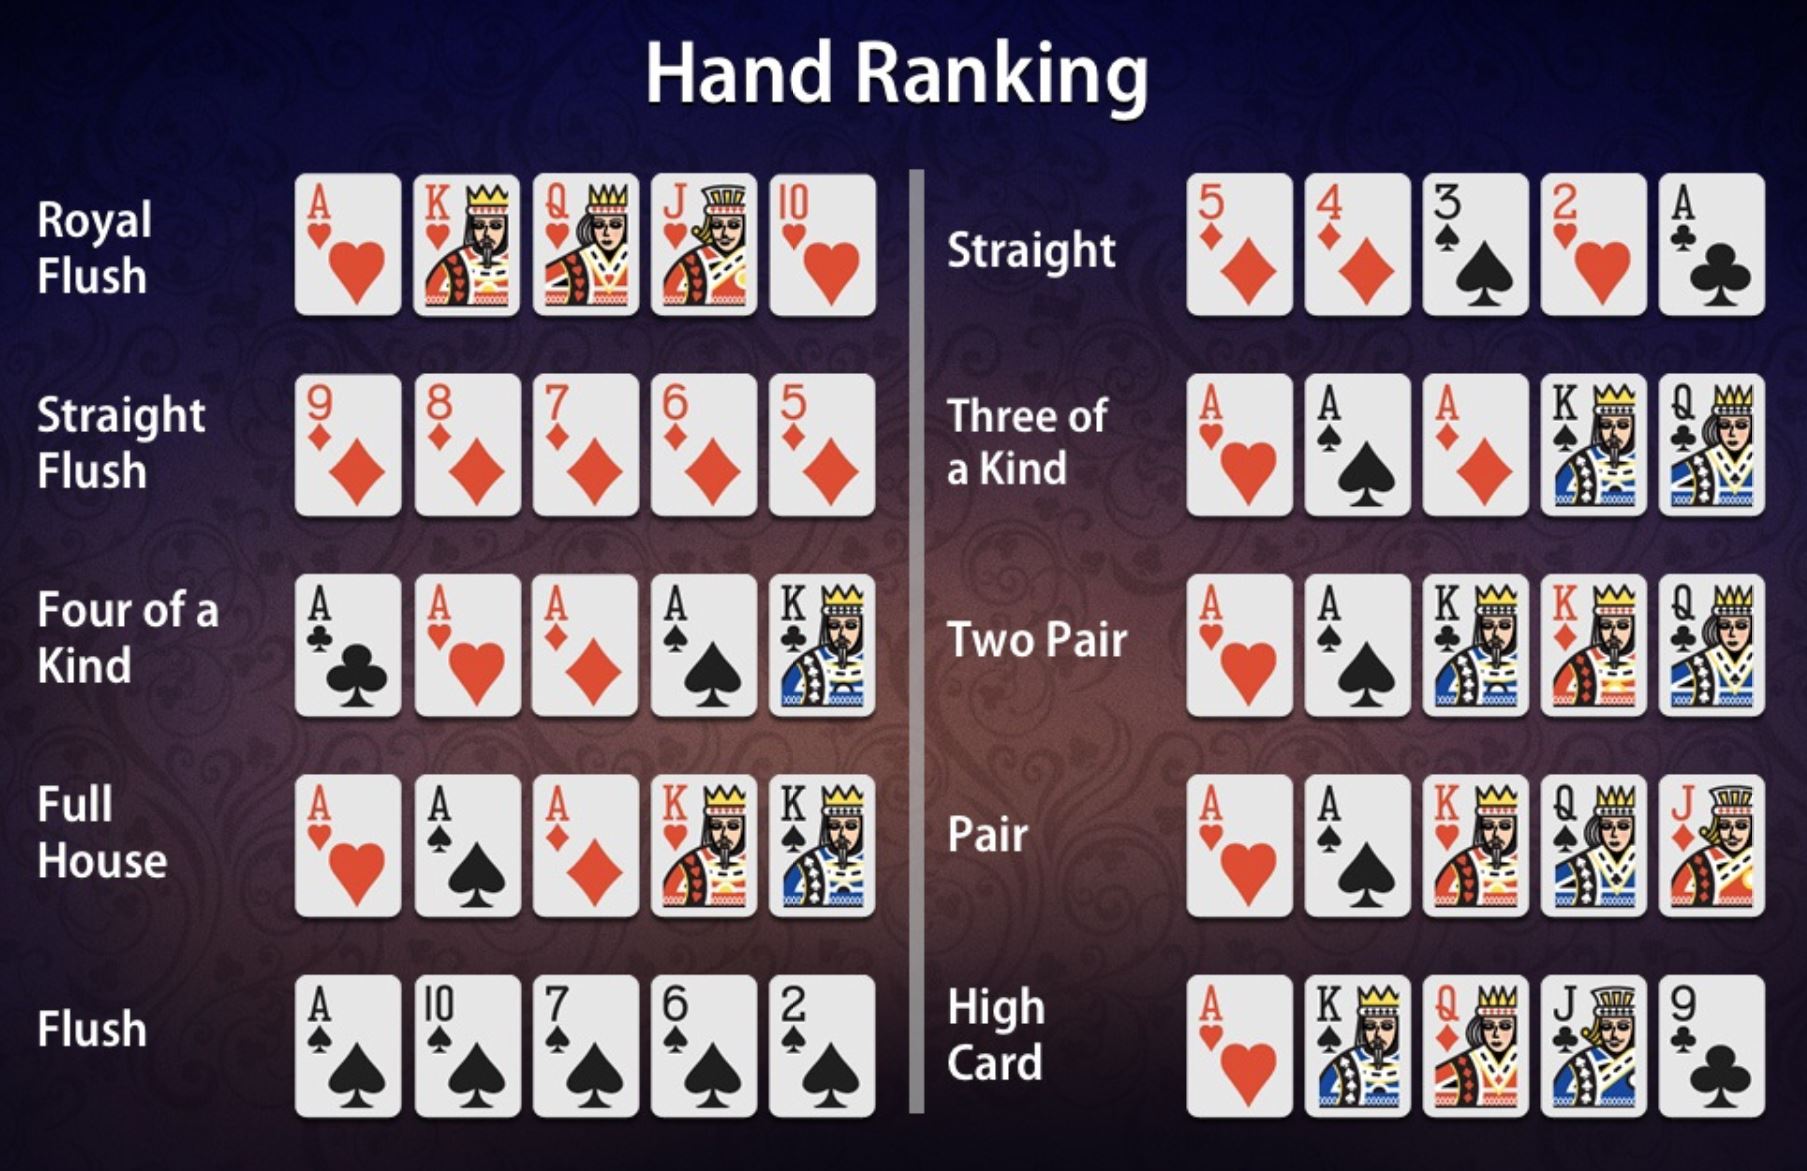 Straight Poker Hand Ranking